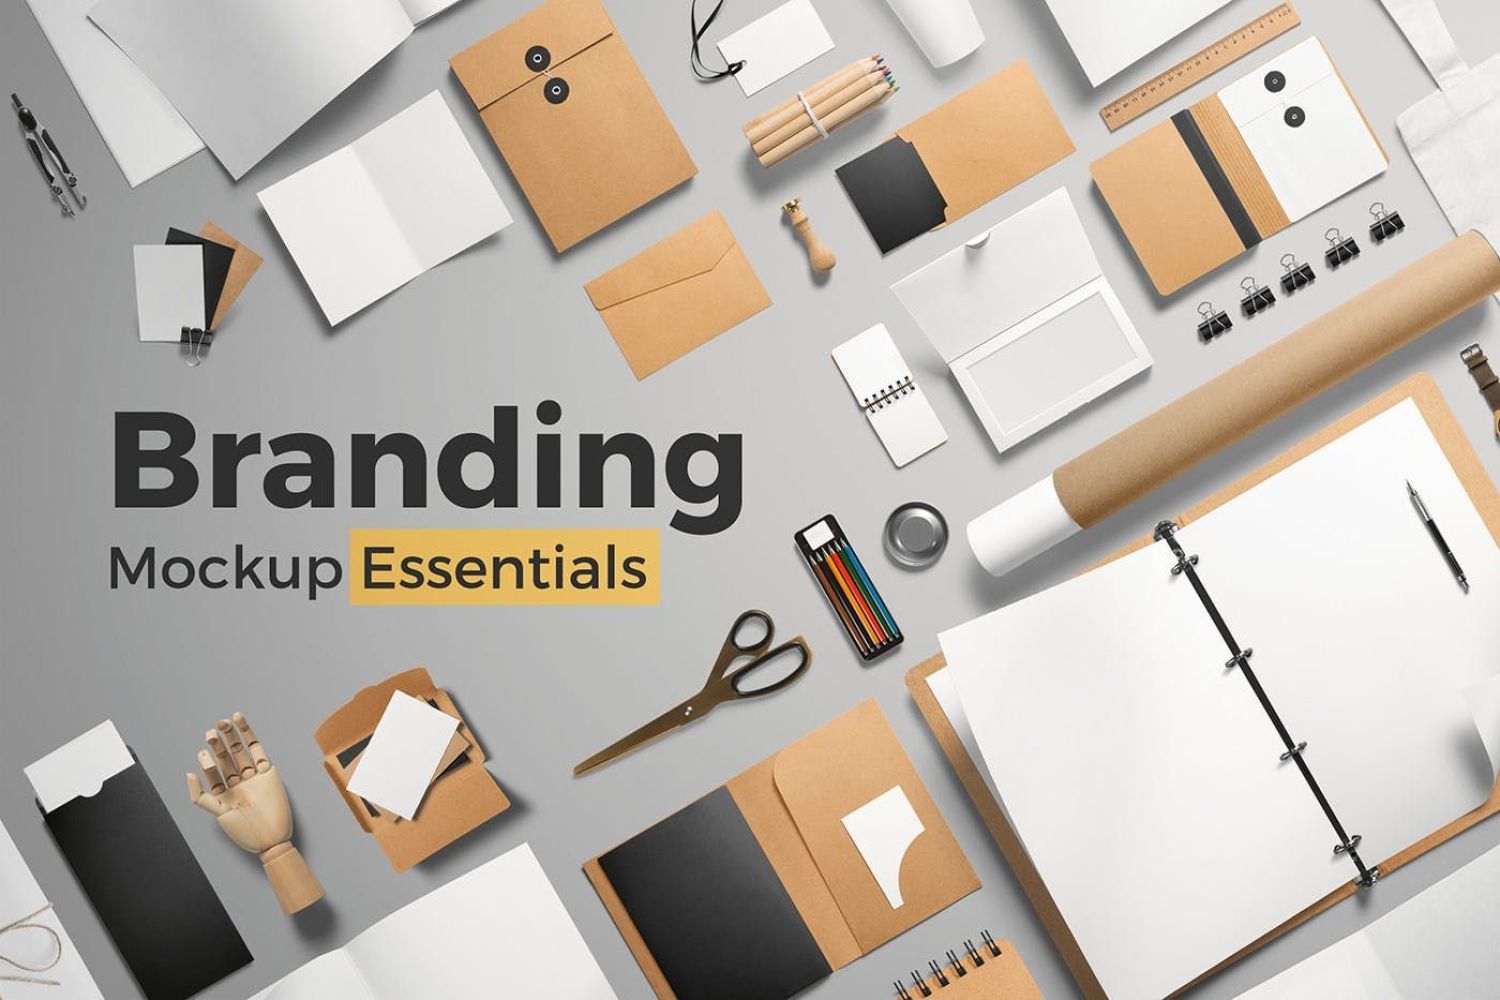 品牌样机元素 Branding Mockup Essentials插图